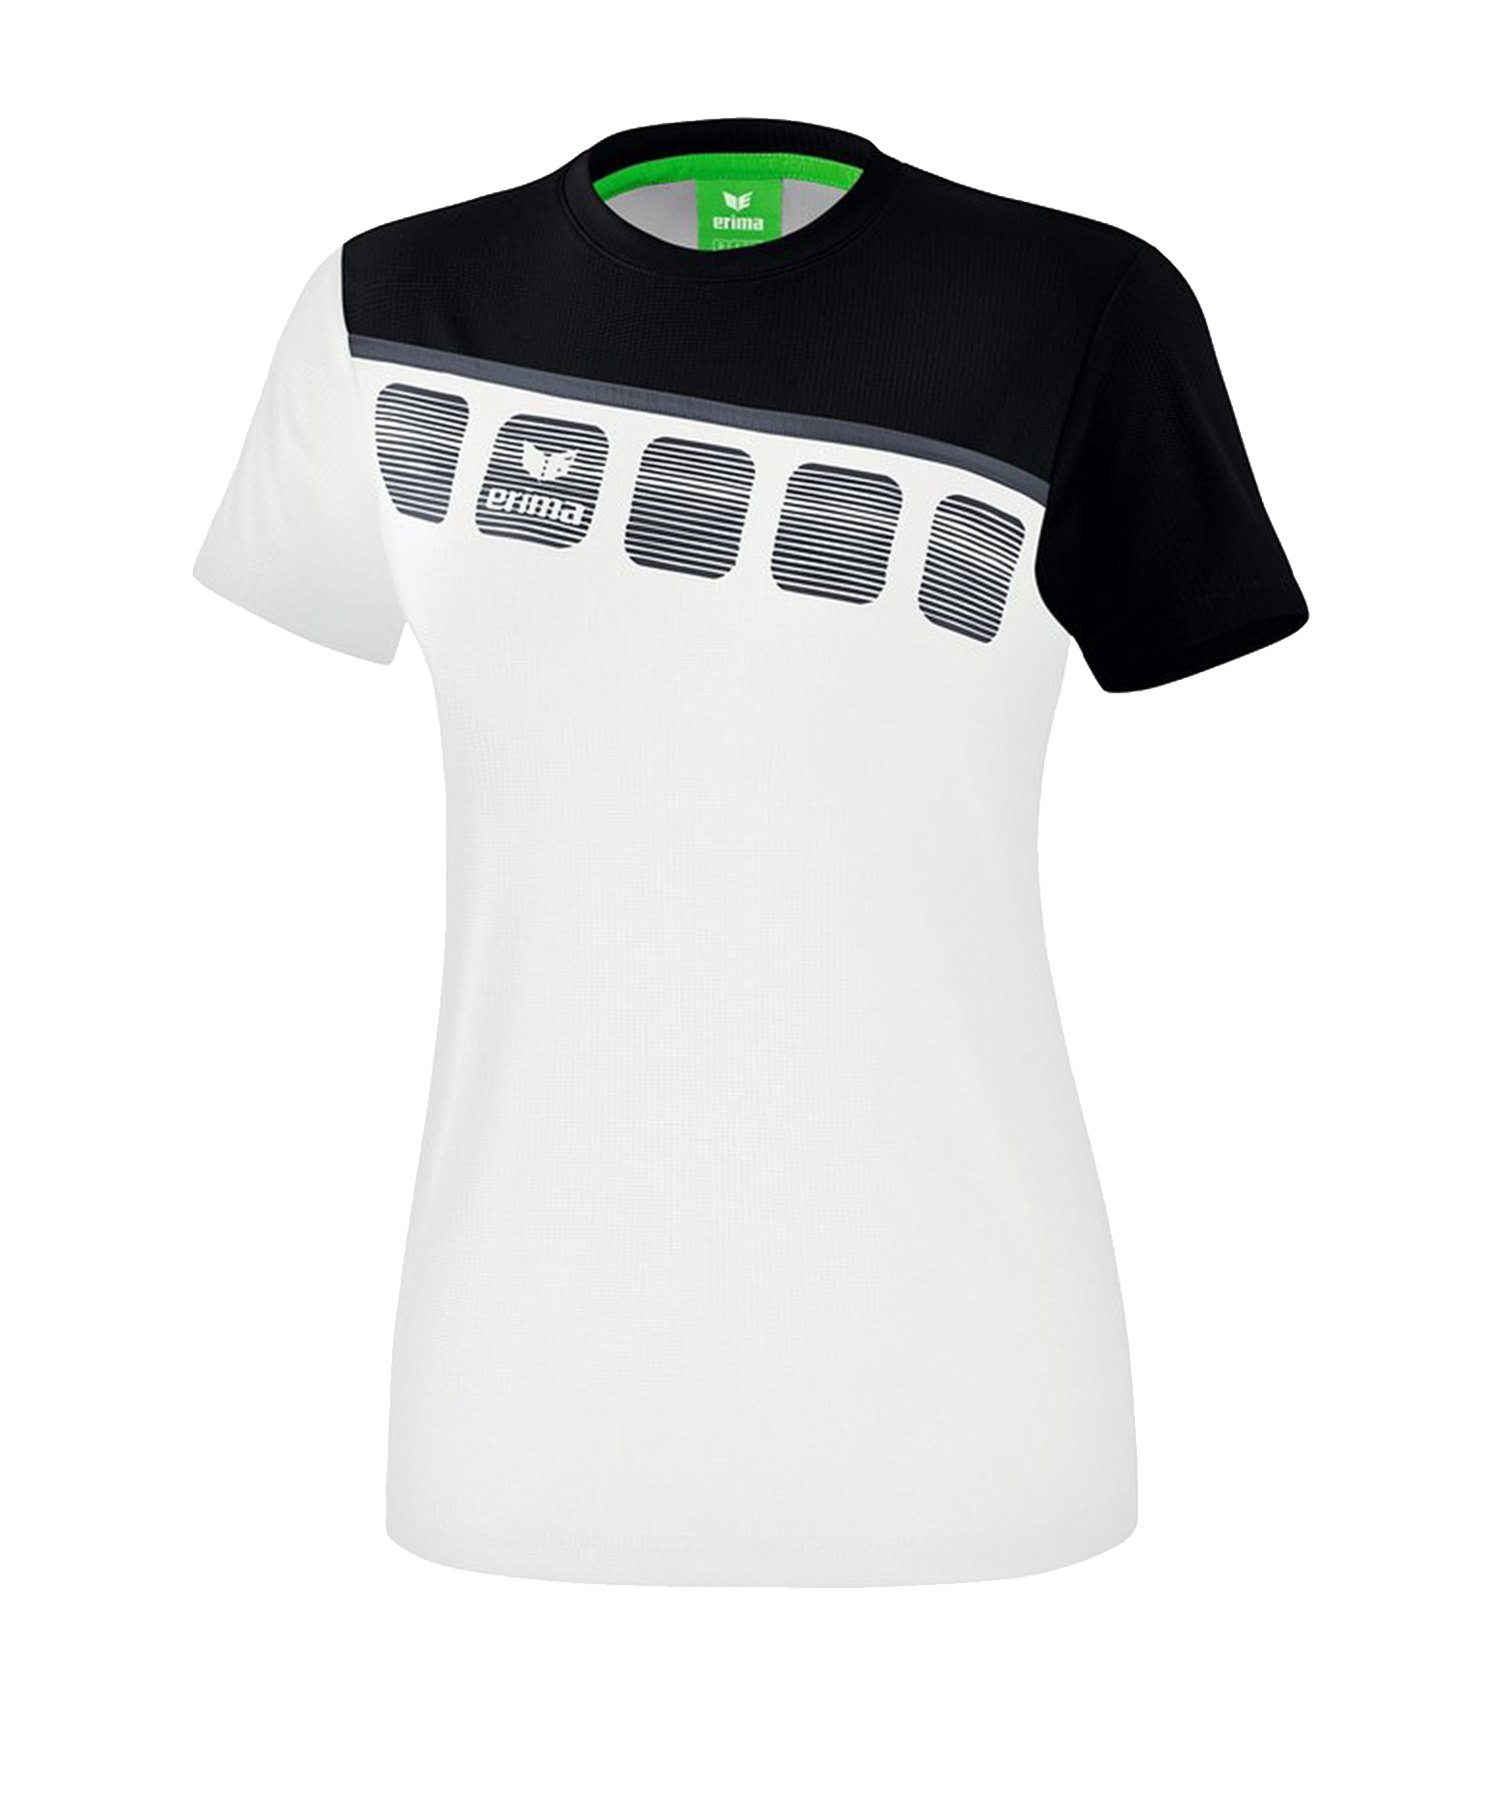 Erima 5-C T-Shirt Damen Weiss Schwarz - Weiss